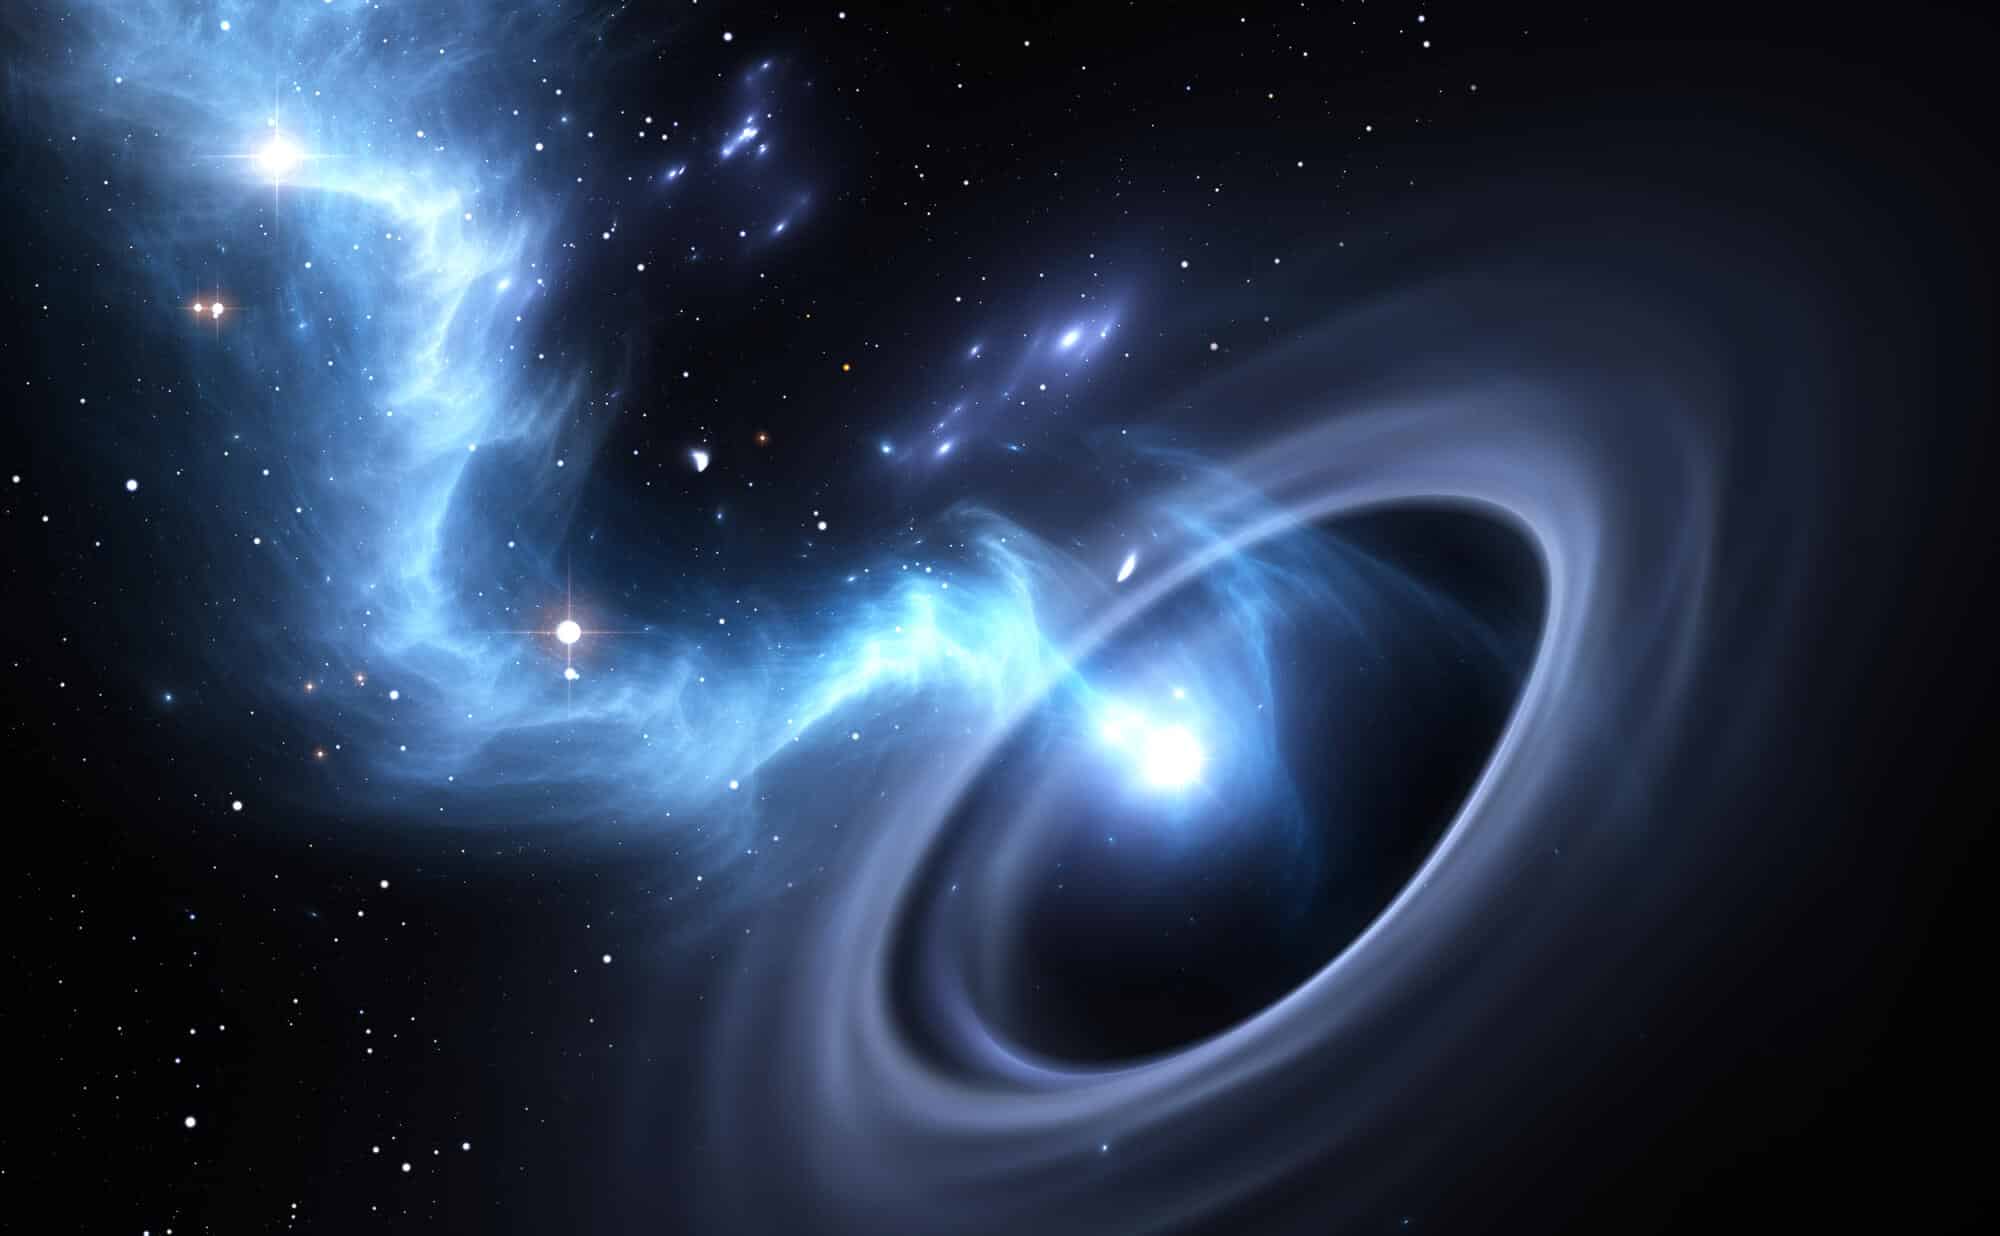 חומר ואף כוכבים שלמים נופלים לתוך חור שחור. <a href="https://depositphotos.com. ">המחשה: depositphotos.com</a>